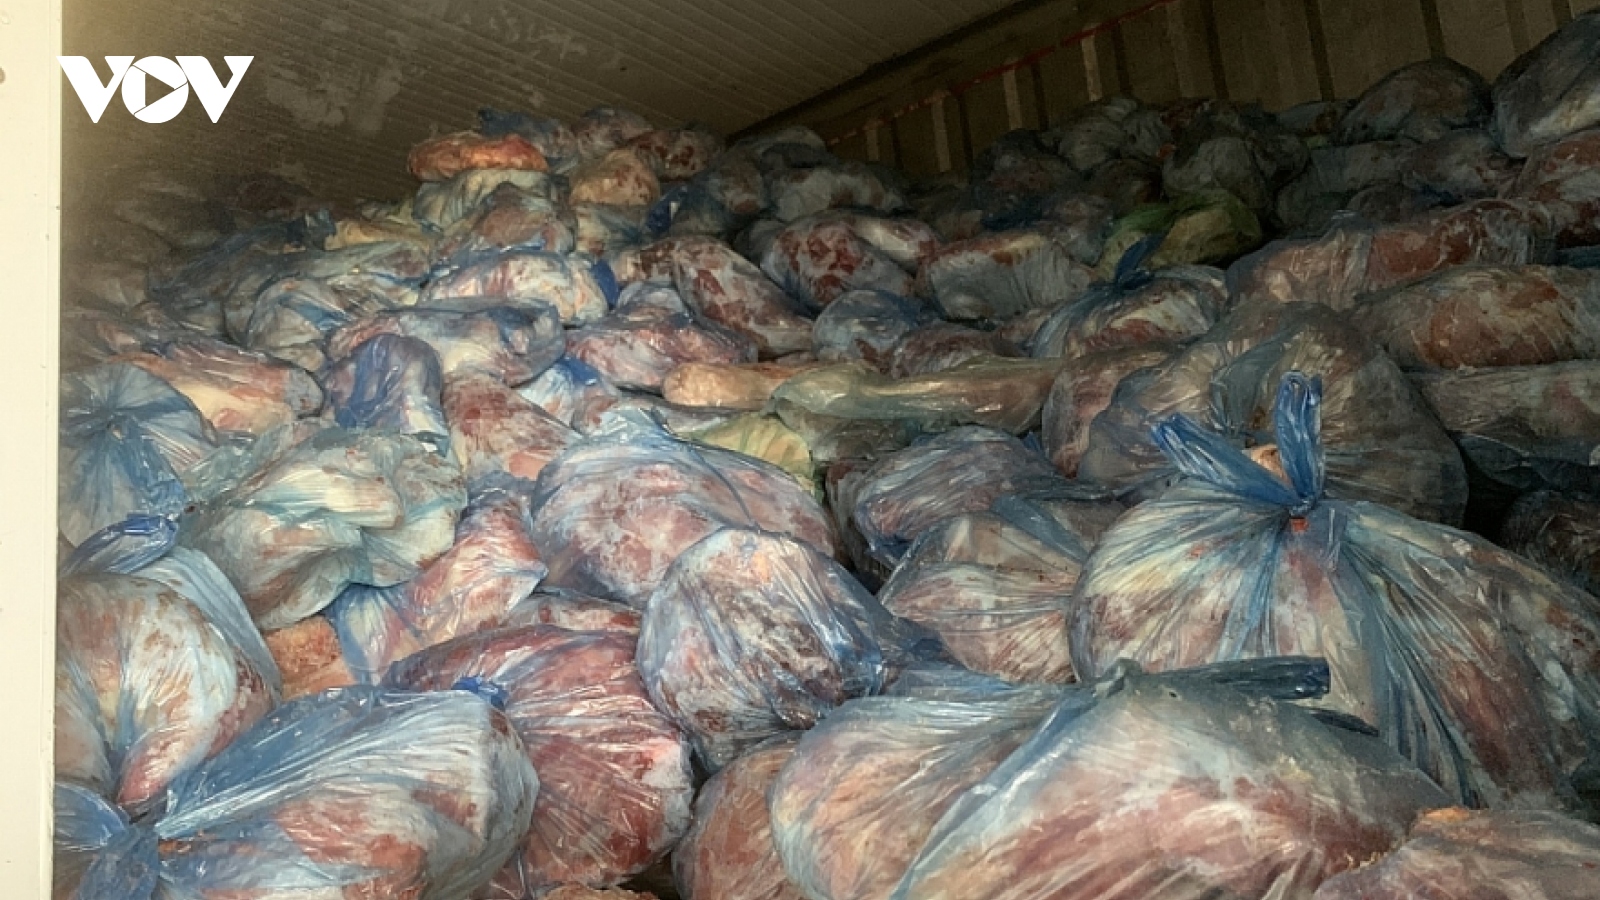 Phát hiện và tiêu huỷ 40 tấn thịt lợn nhiễm dịch tả lợn châu Phi